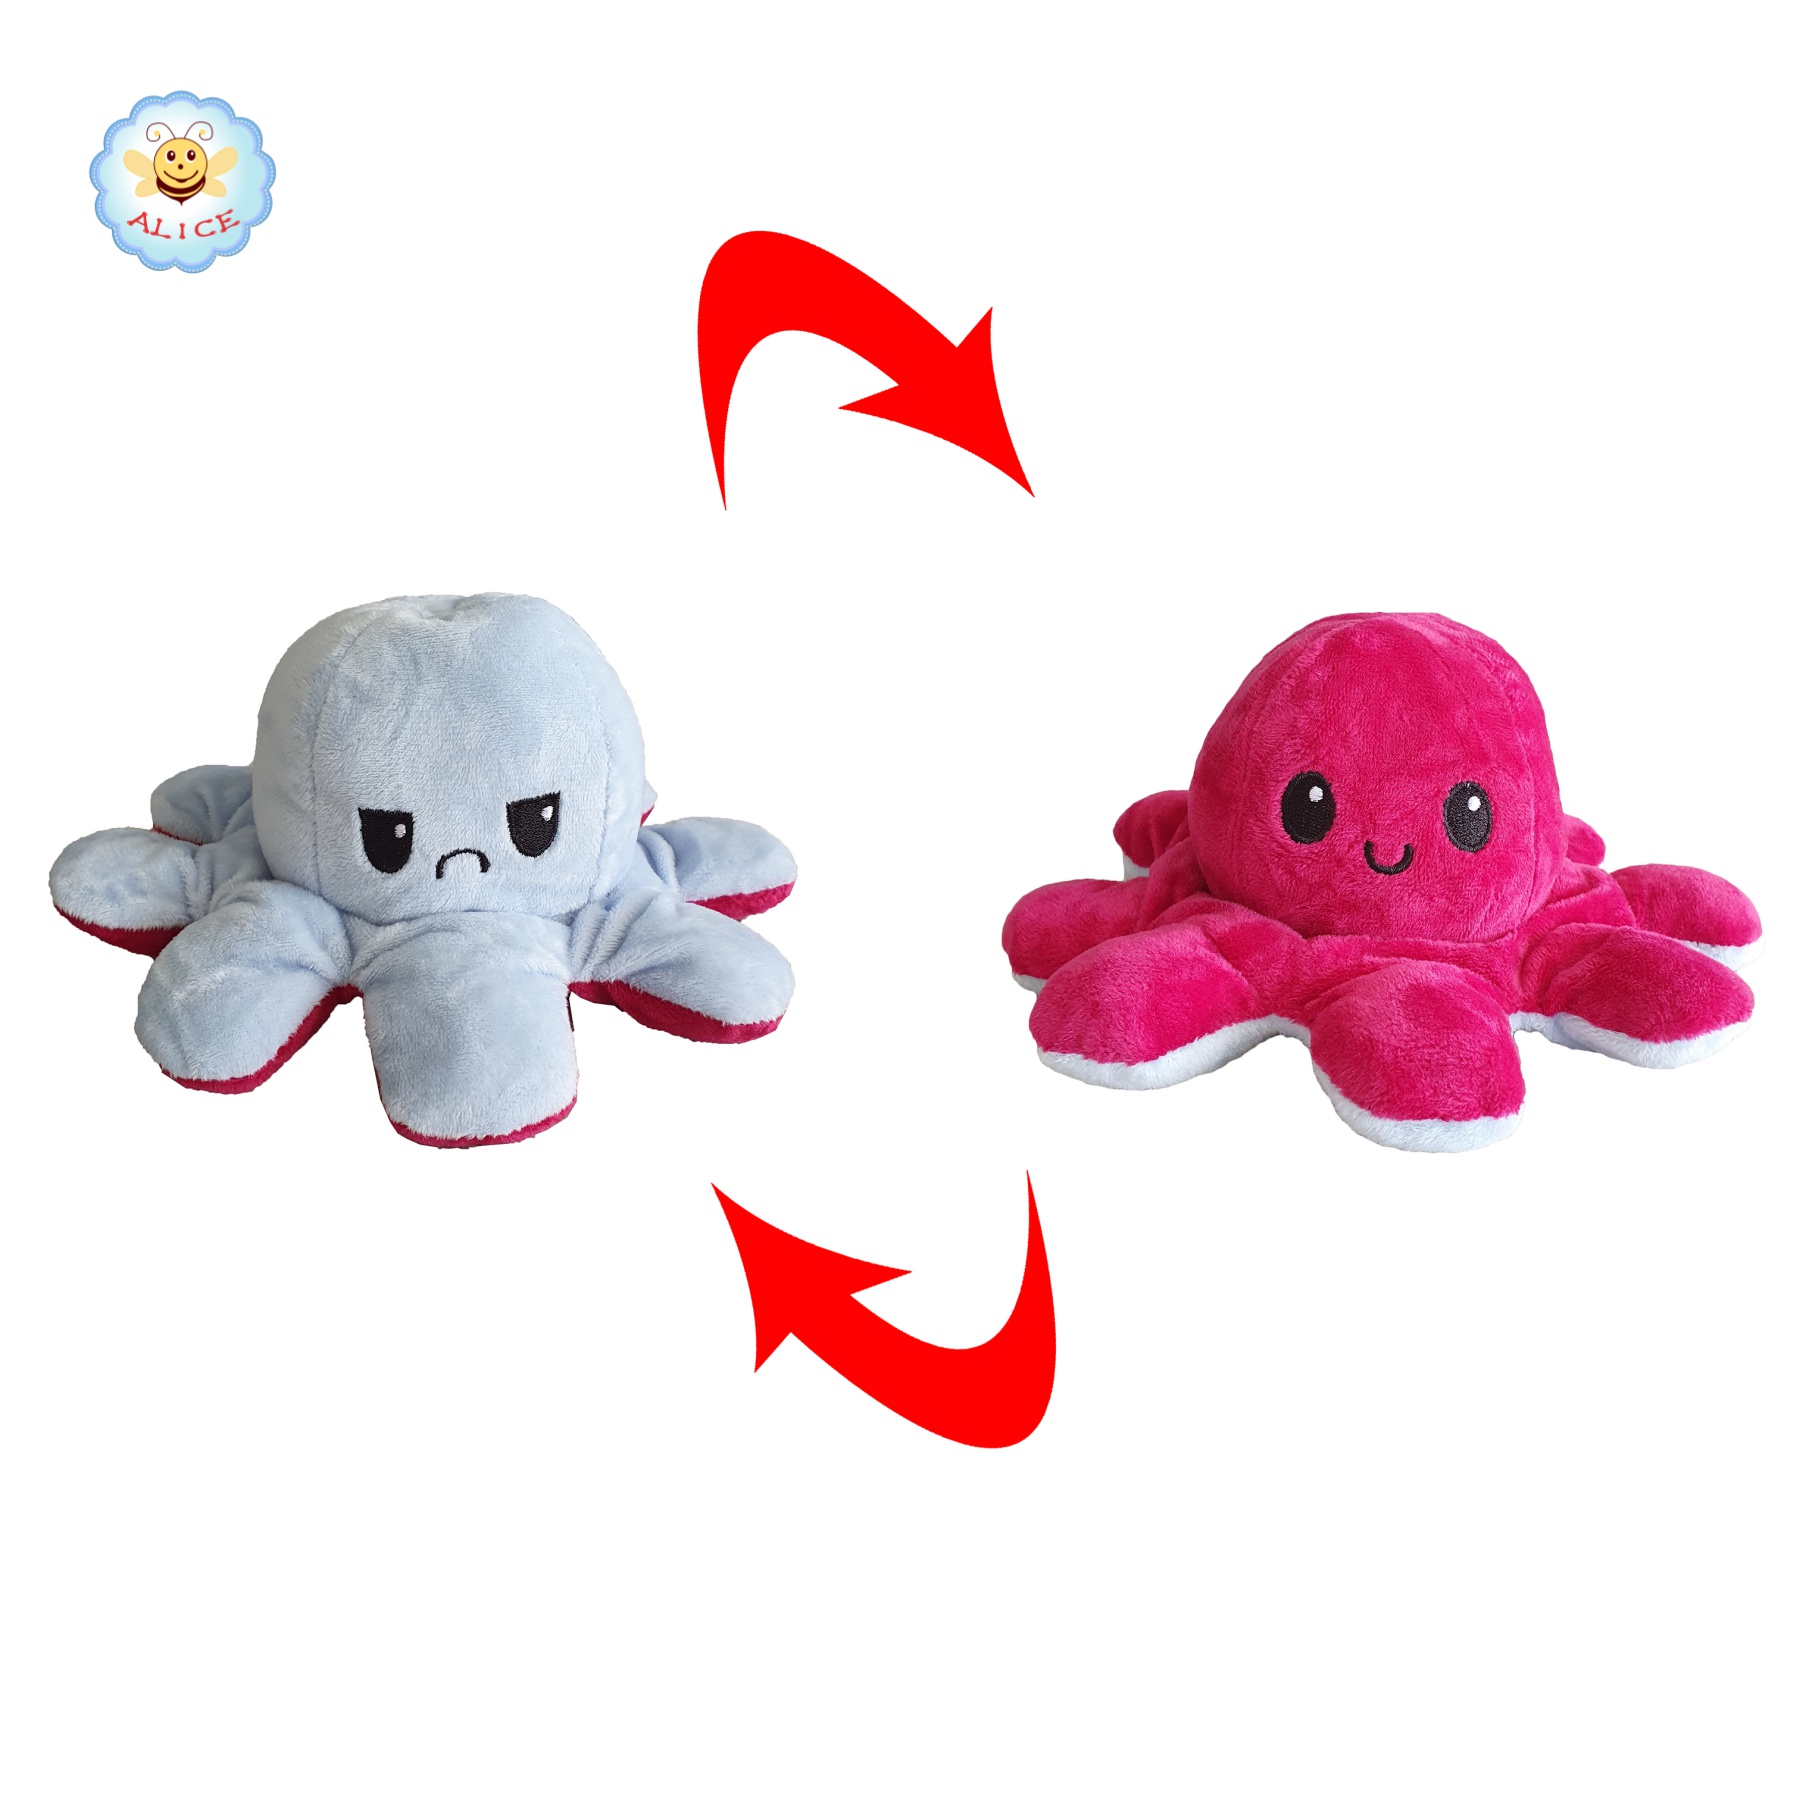 ถูกที่สุด ตุ๊กตาปลาหมึก 10*19cm ตุ๊กตาปลาหมึก เปลี่ยนสี เปลี่ยนอารมณ์ ดังมากใน tiktok flip octopus alicolly